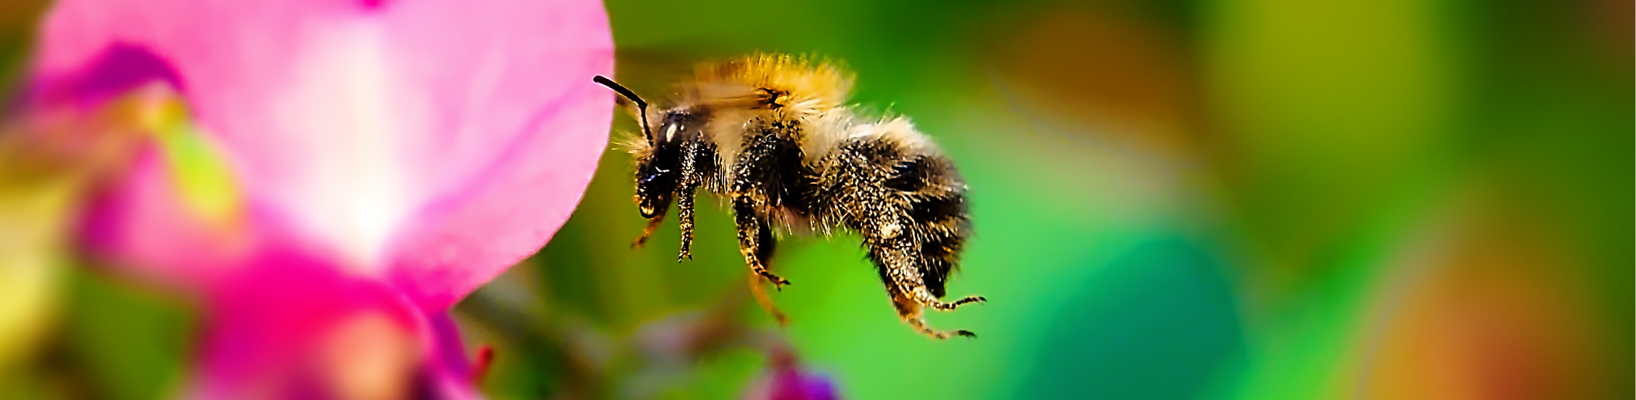 Kollage: Macro-Aufnahme 5.7 Biene im Flug